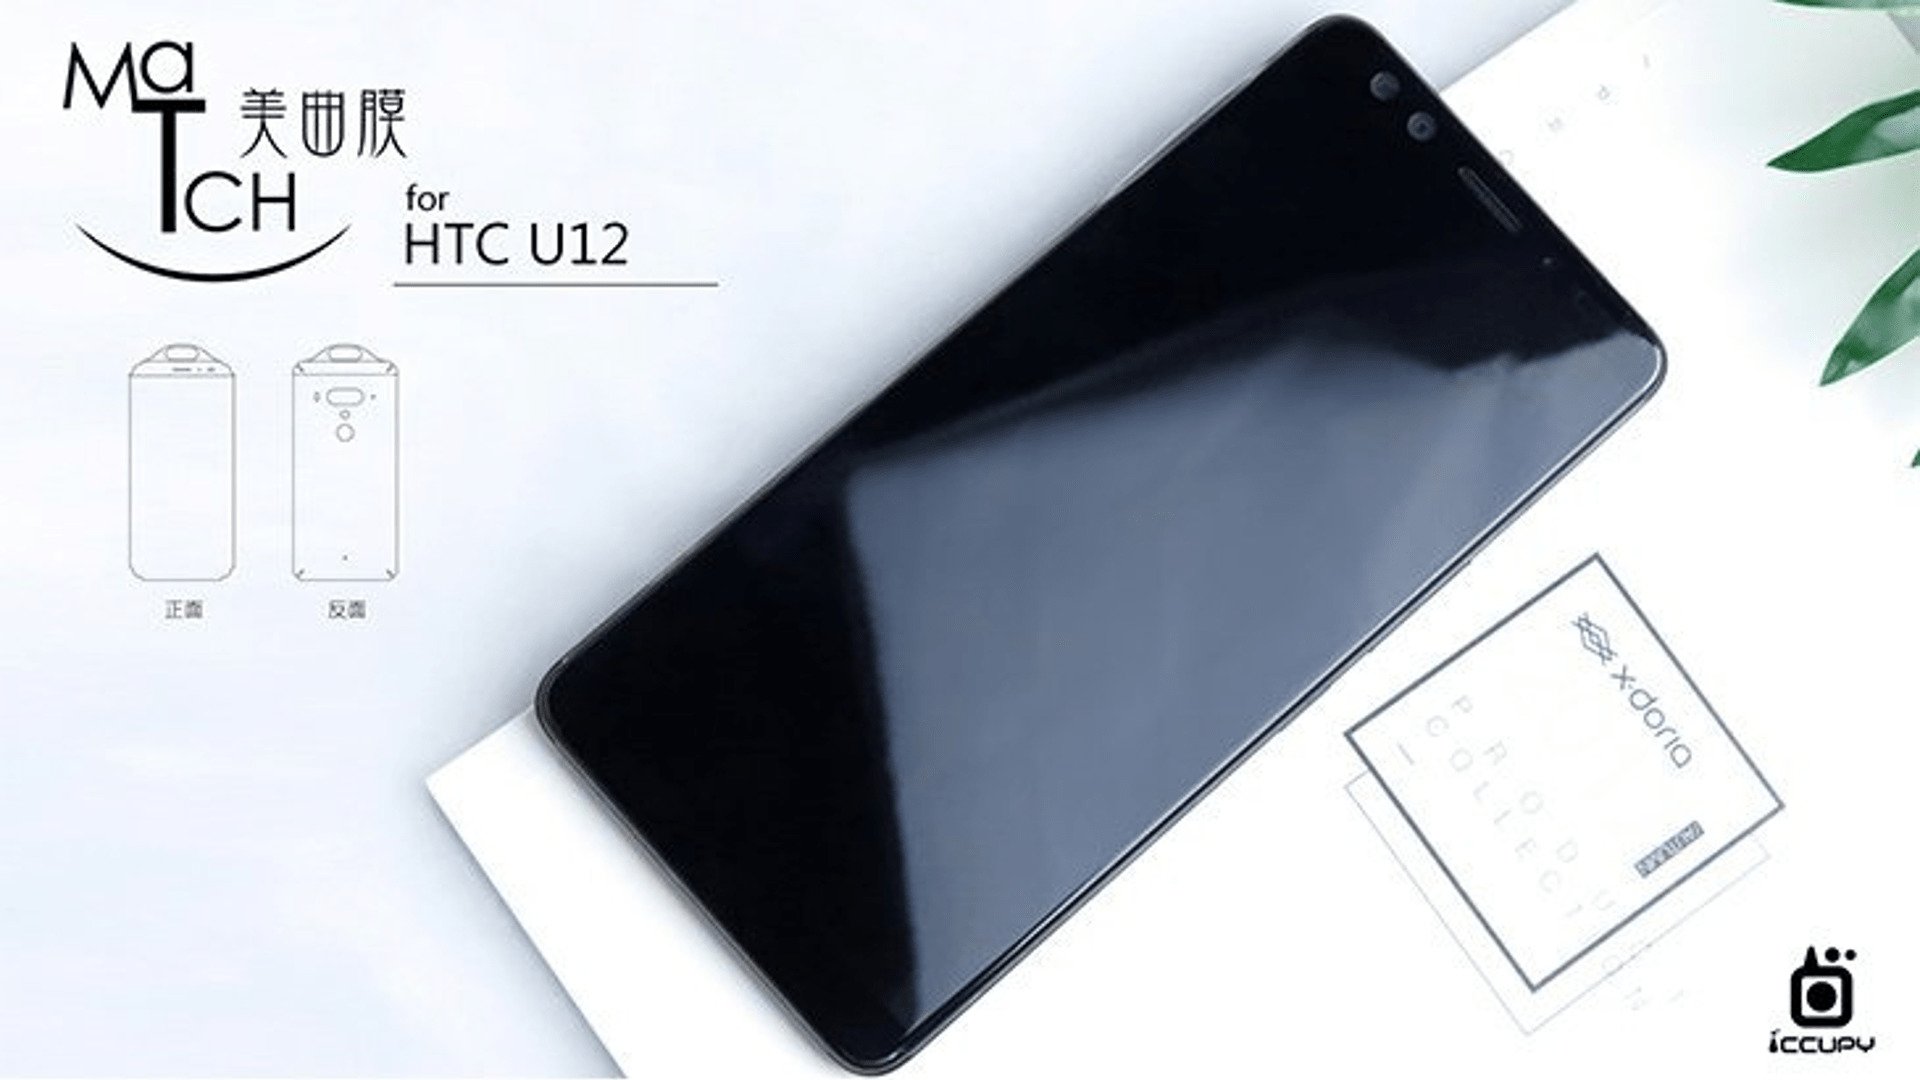 HTC U12 Concept